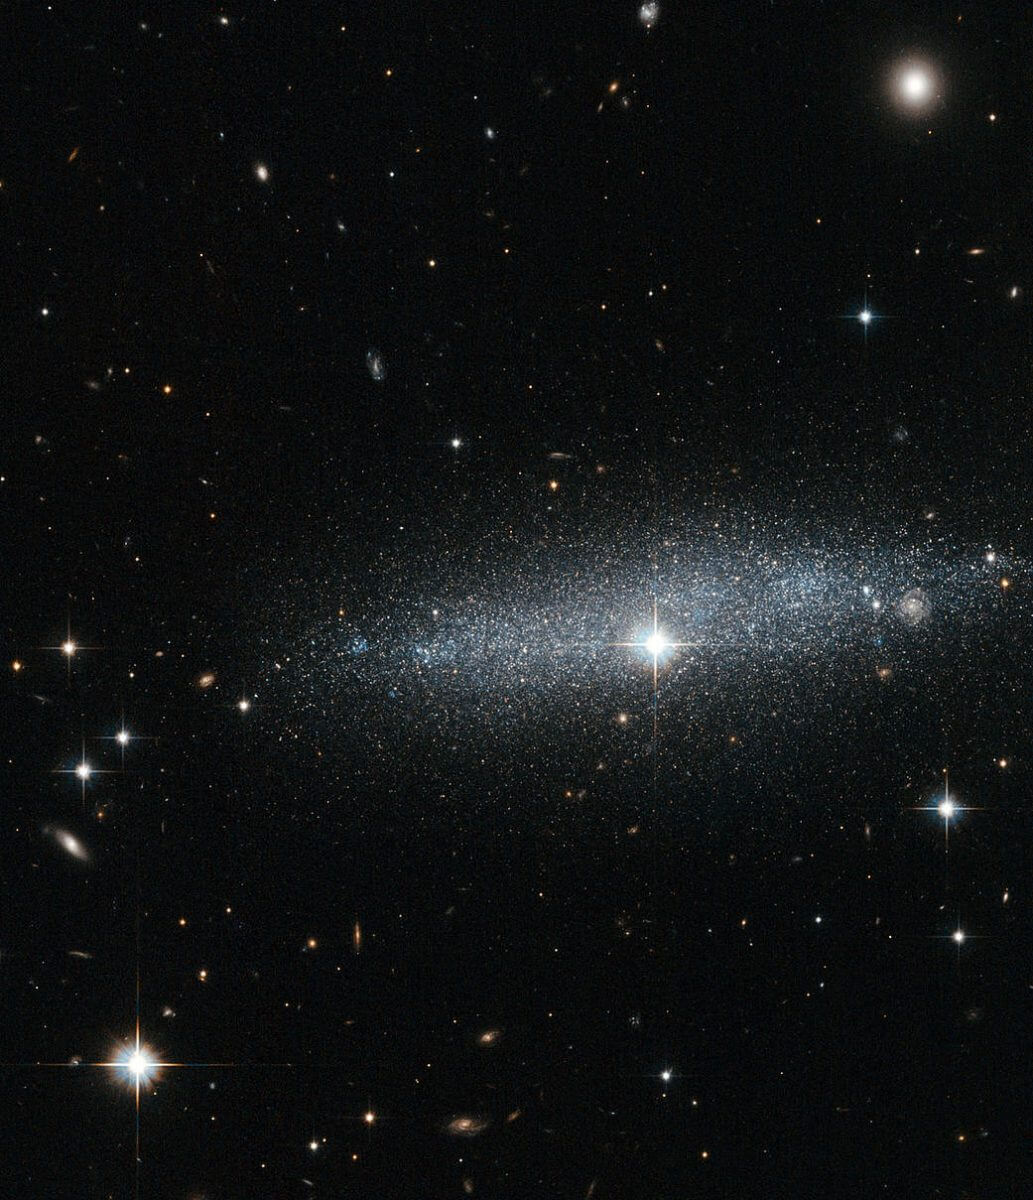 キラキラ銀河のスカスカな空間を透して見る渦巻銀河